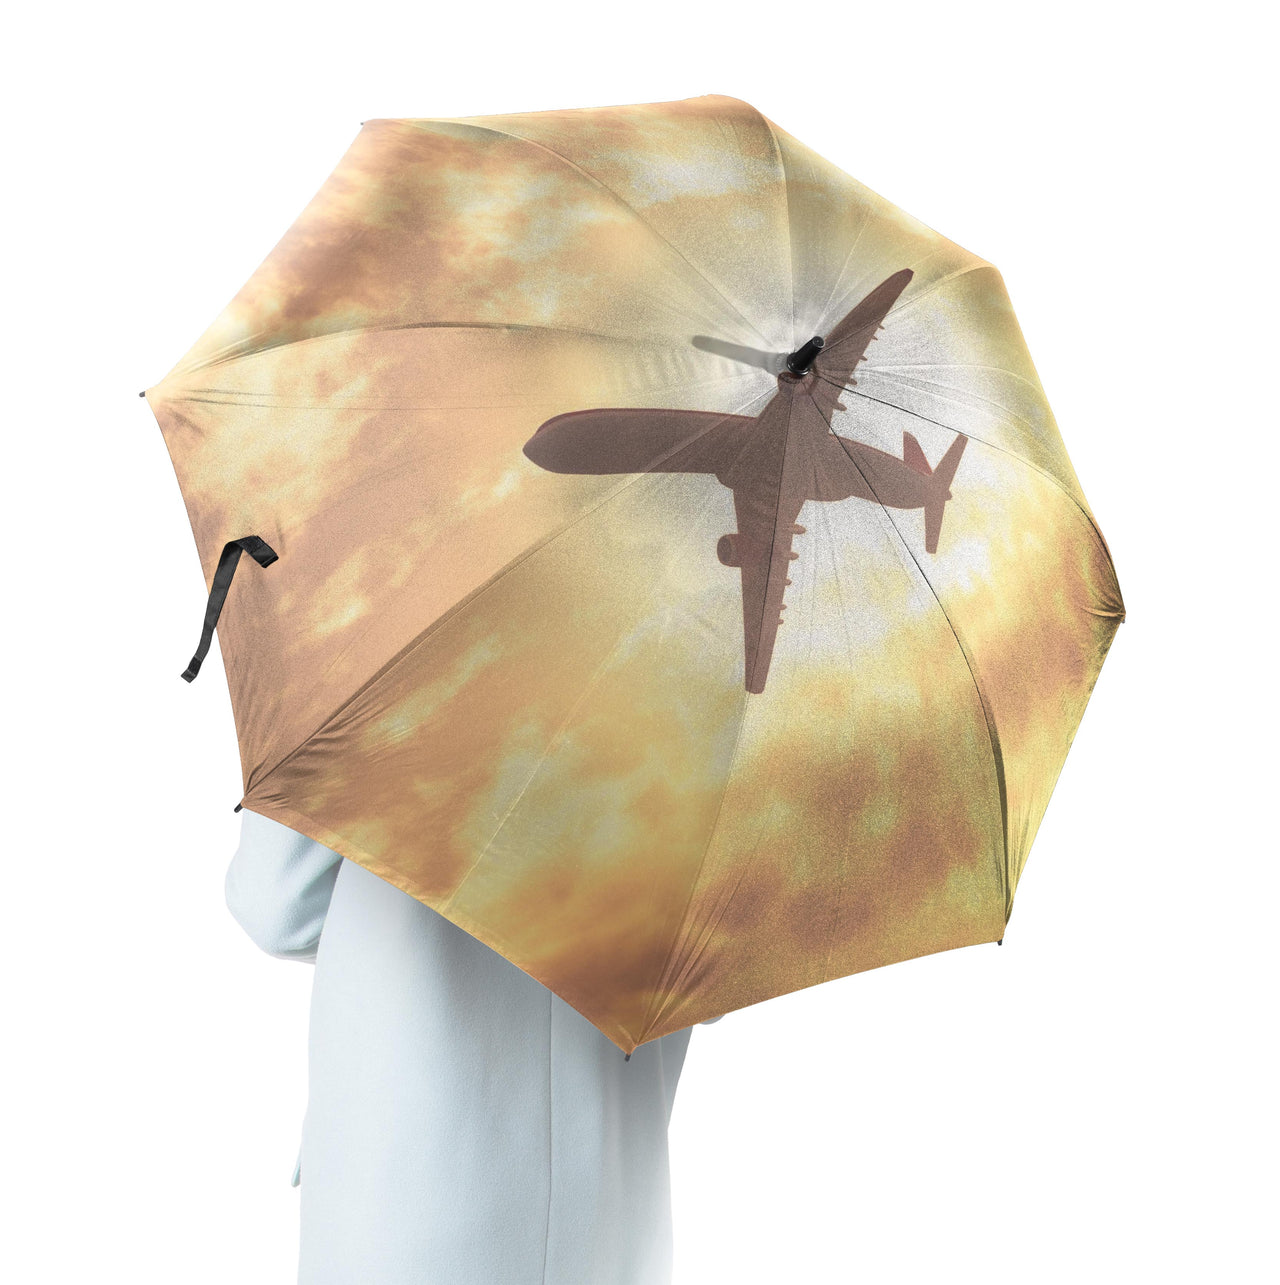 Plane Passing By Designed Umbrella